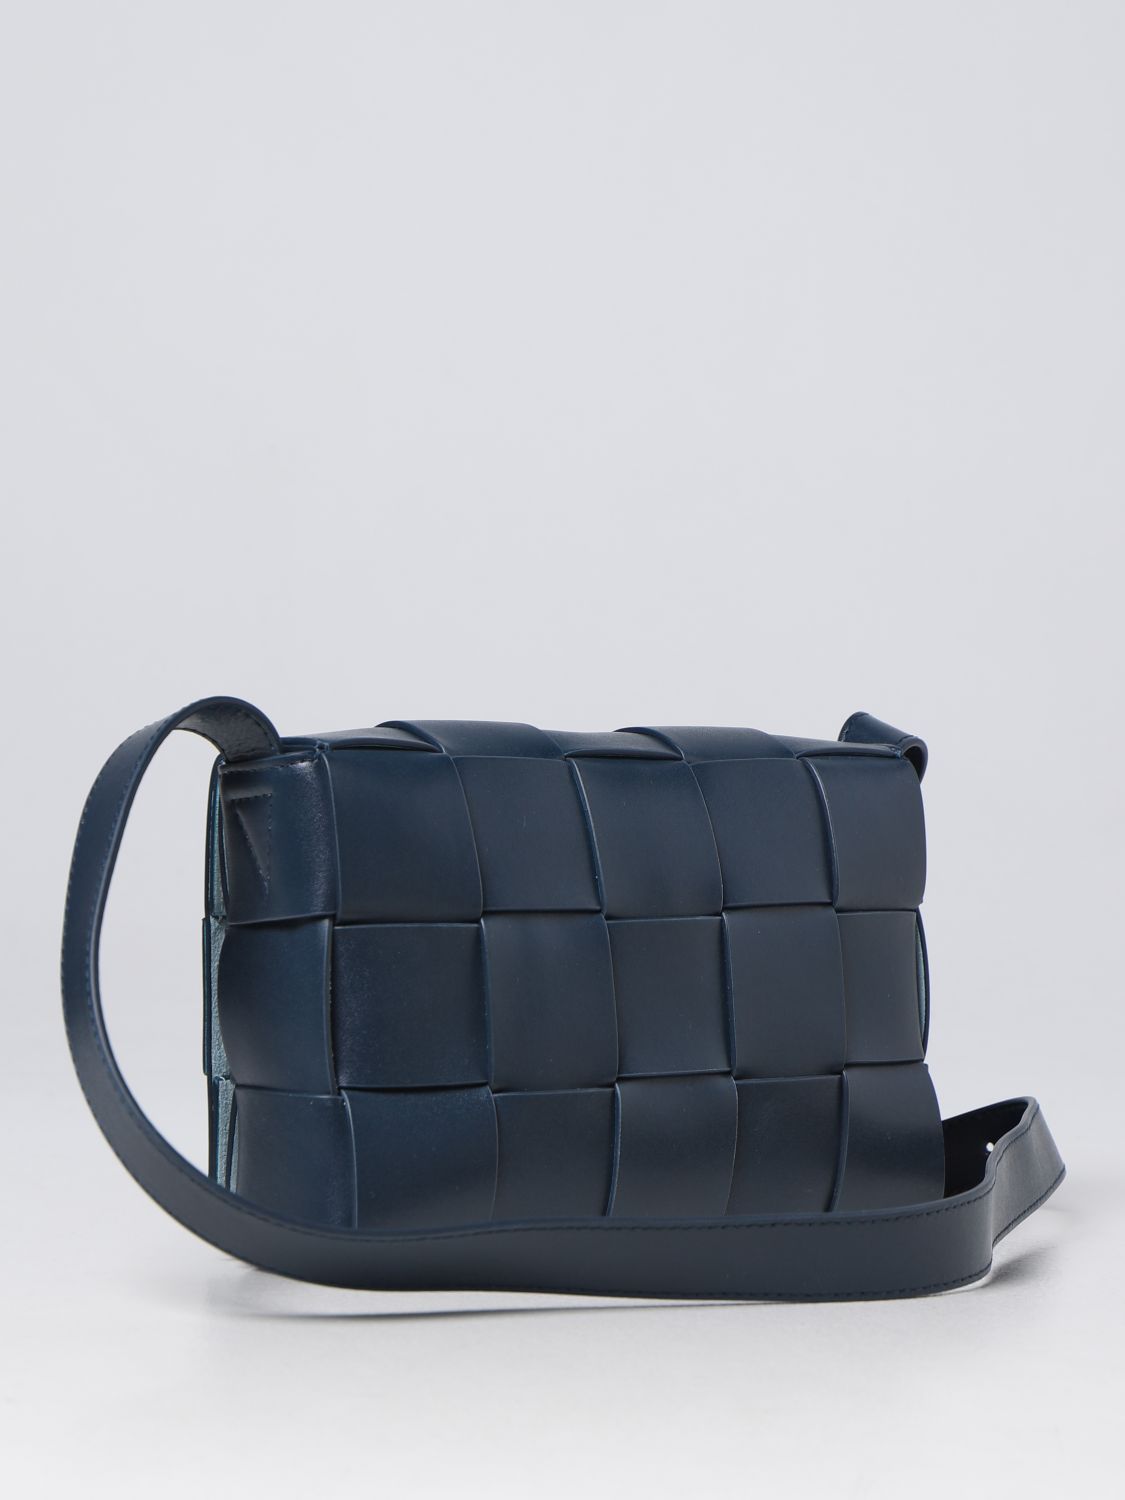 BOTTEGA VENETA: Cassette woven leather bag - Blue | Bottega Veneta ...